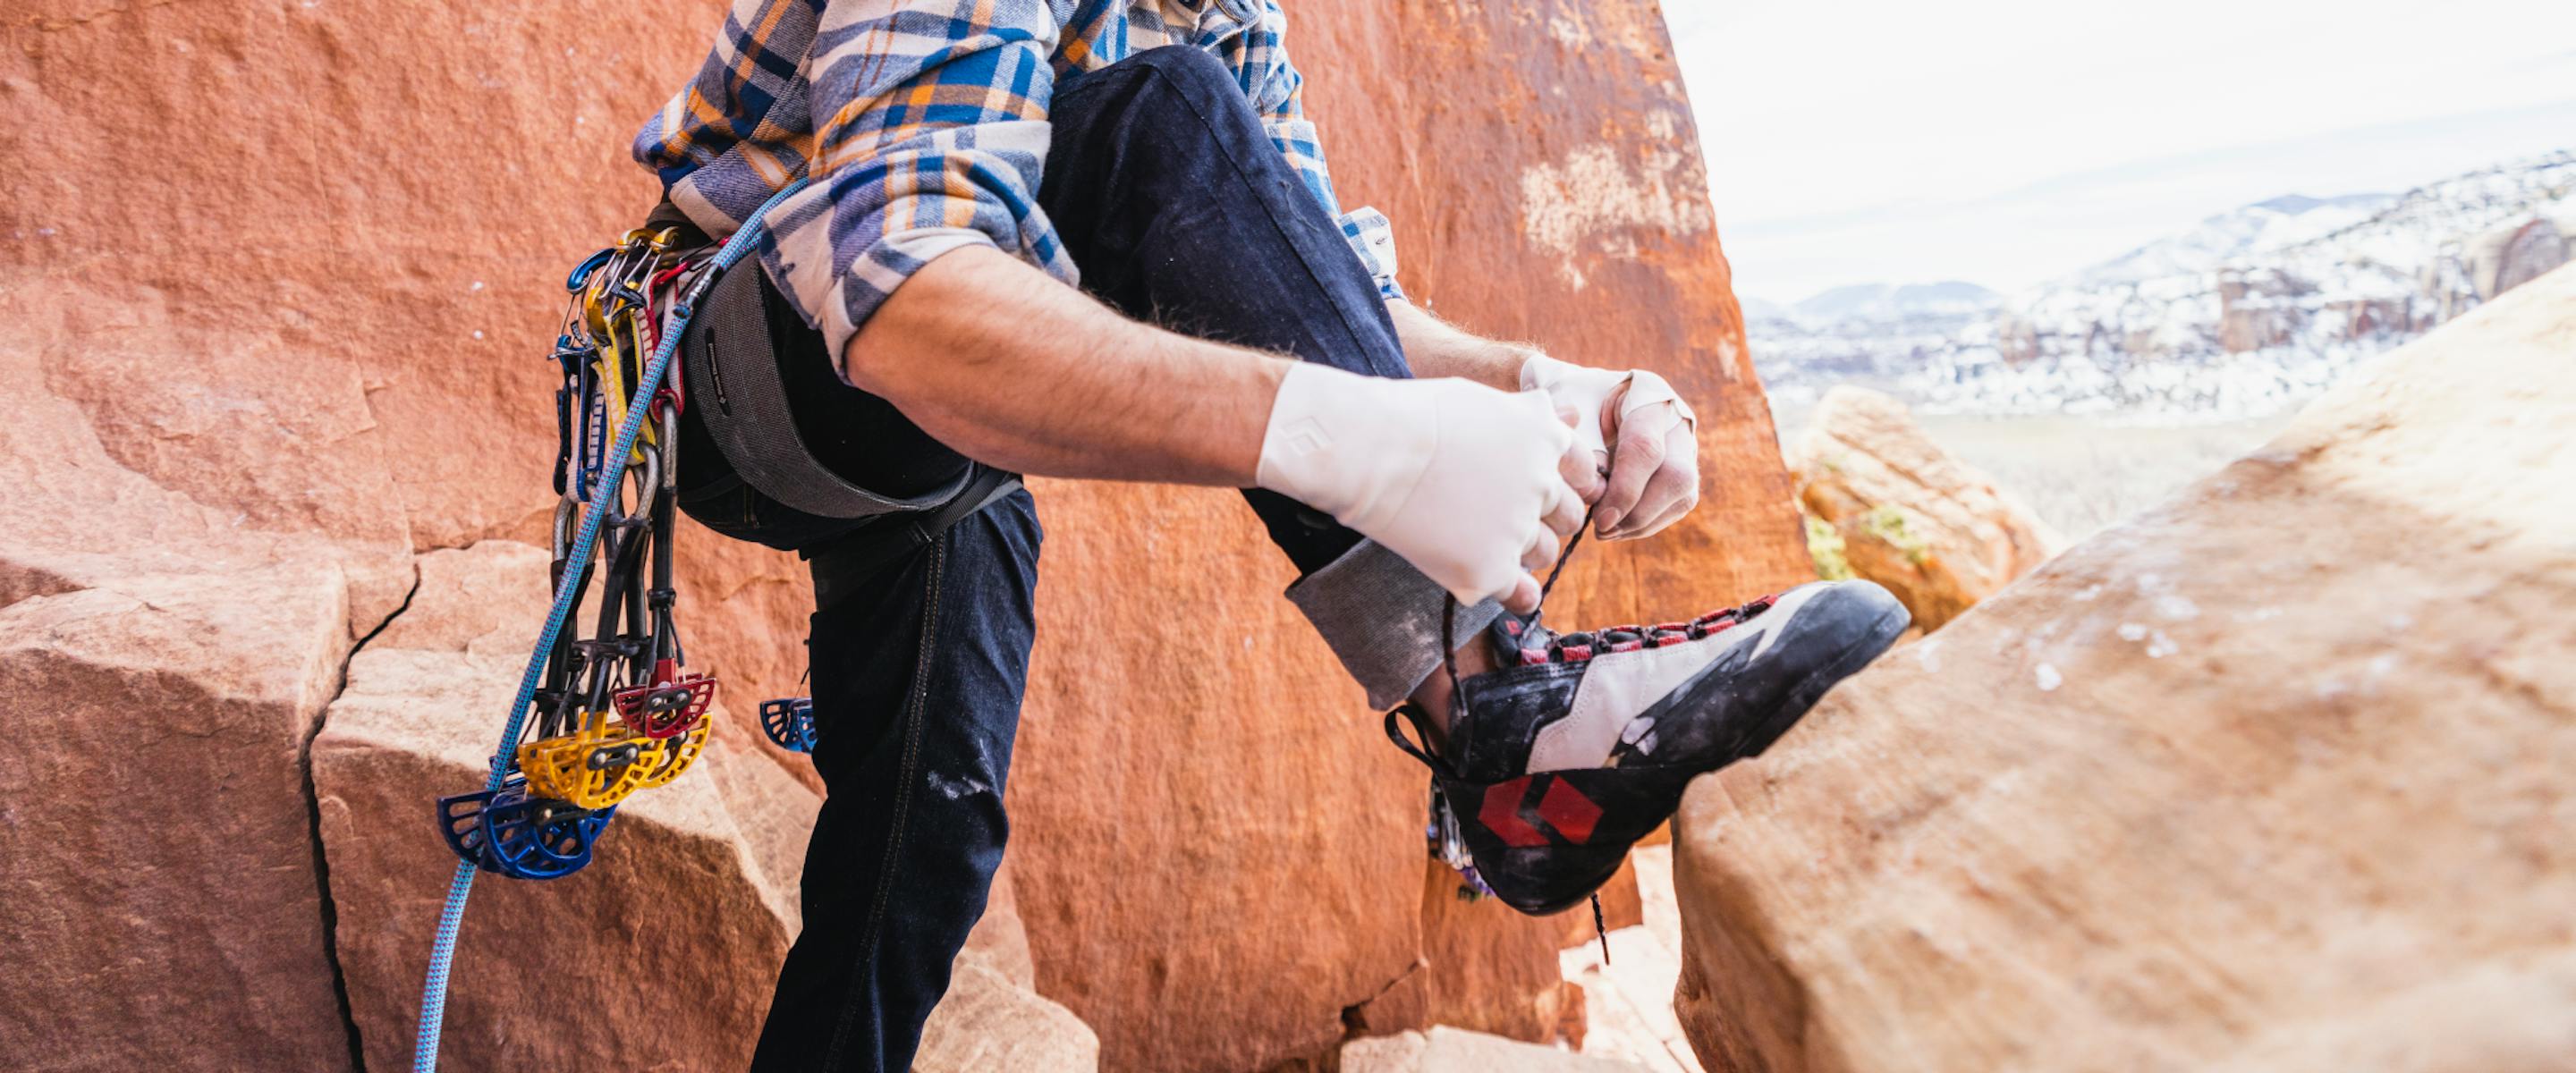 Climbing Shoes For Gym & Rock Climbing